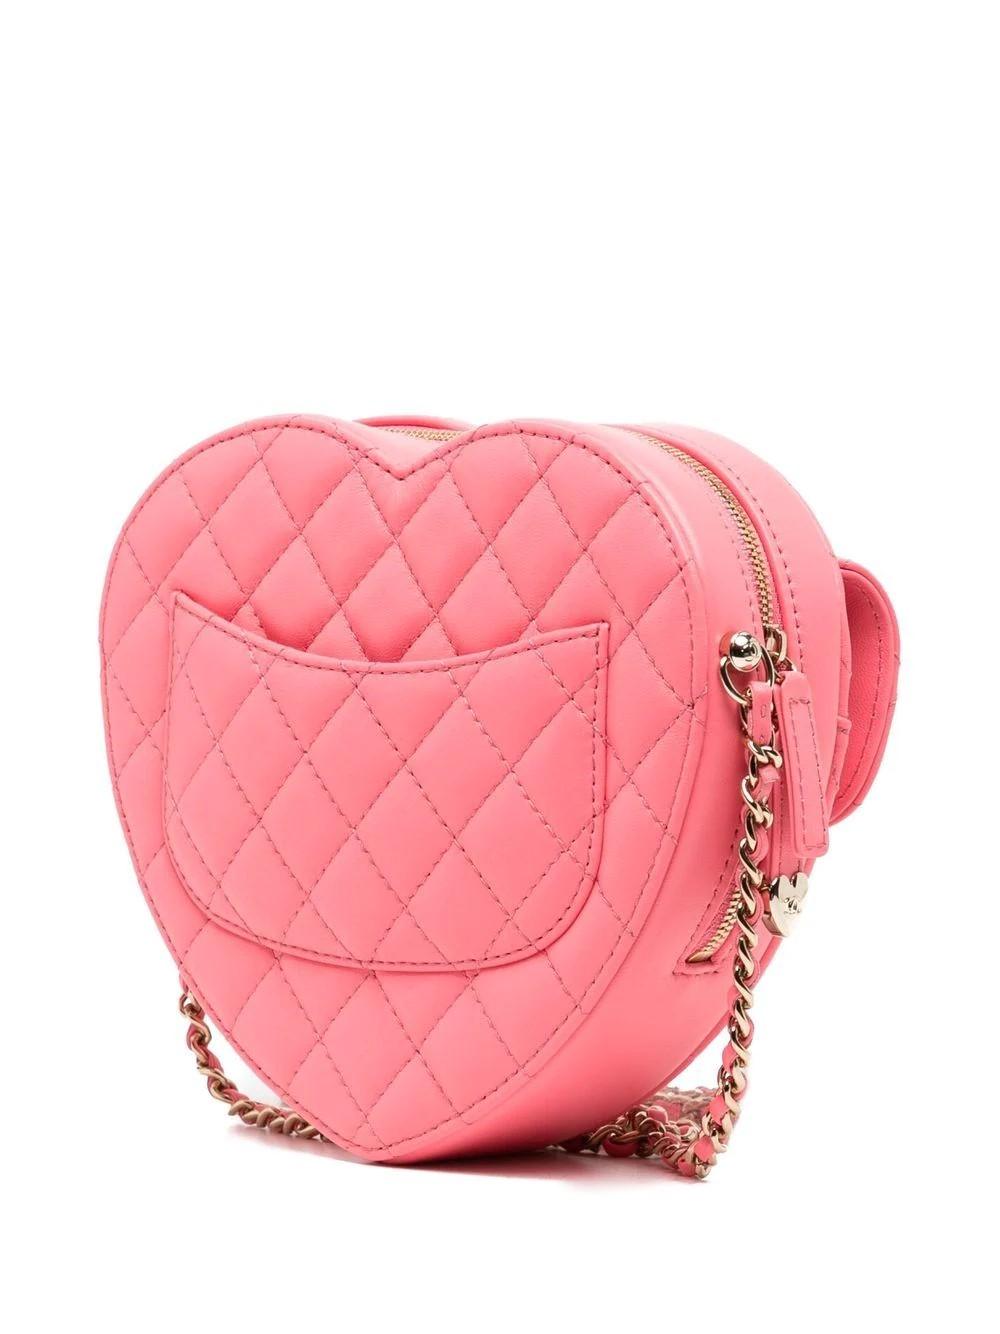 Ce luxueux sac Pink Heart de la collection Chanel SS22 offre un design amusant et unique avec une belle finition en cuir. Doté d'un matelassage diamant doux et souple, d'une bandoulière en chaîne, d'une fermeture zippée à double sens et d'une